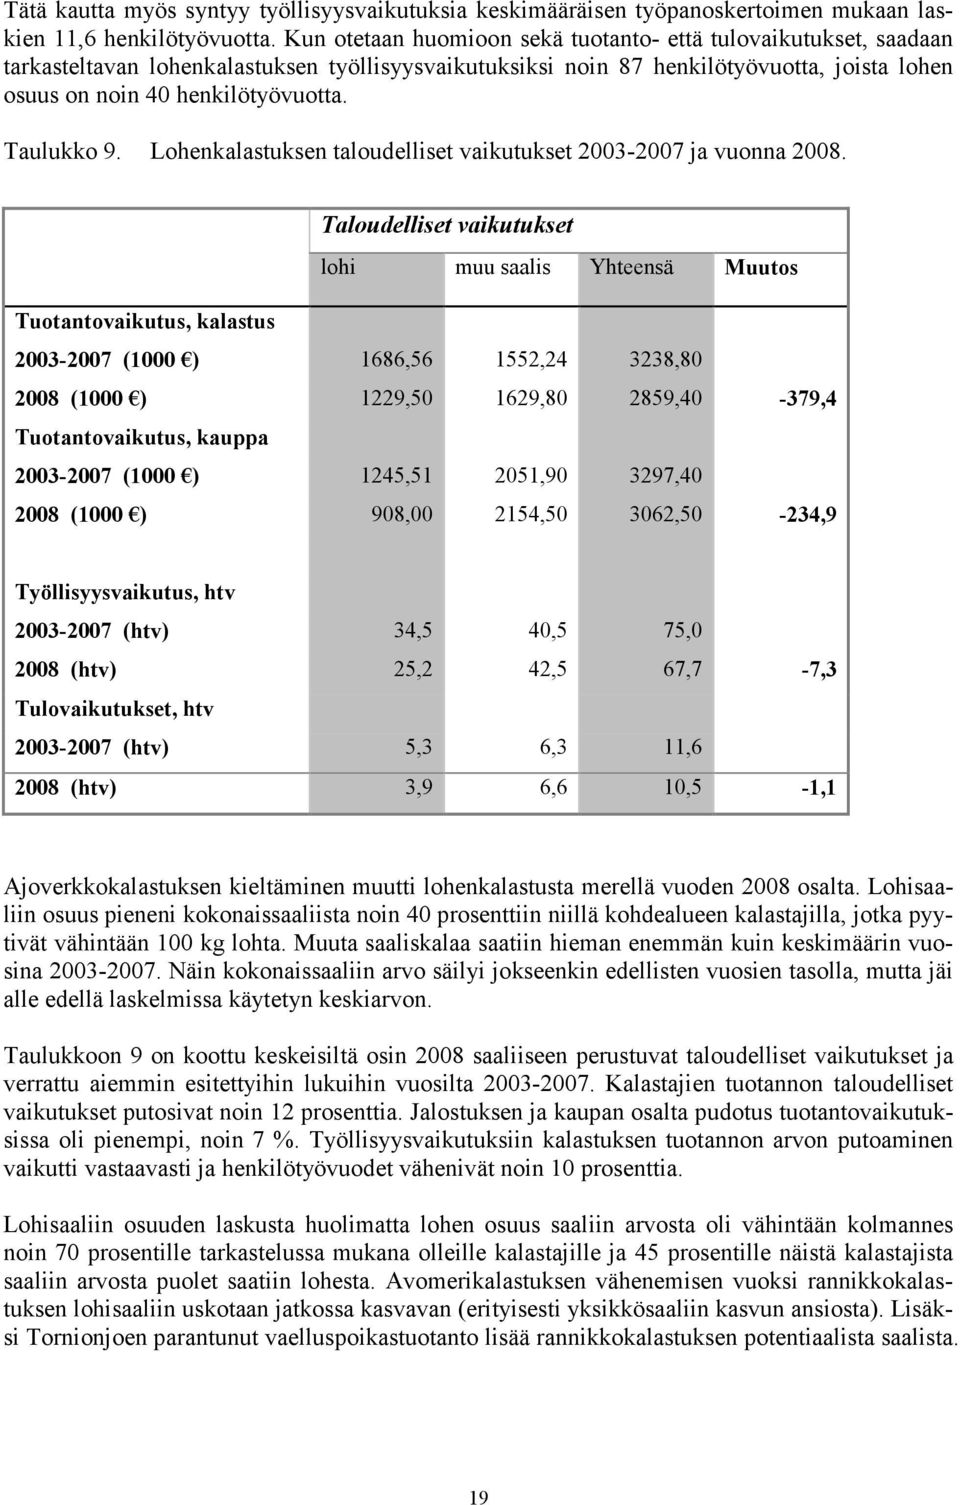 Taulukko 9. Lohenkalastuksen taloudelliset vaikutukset 2003-2007 ja vuonna 2008.